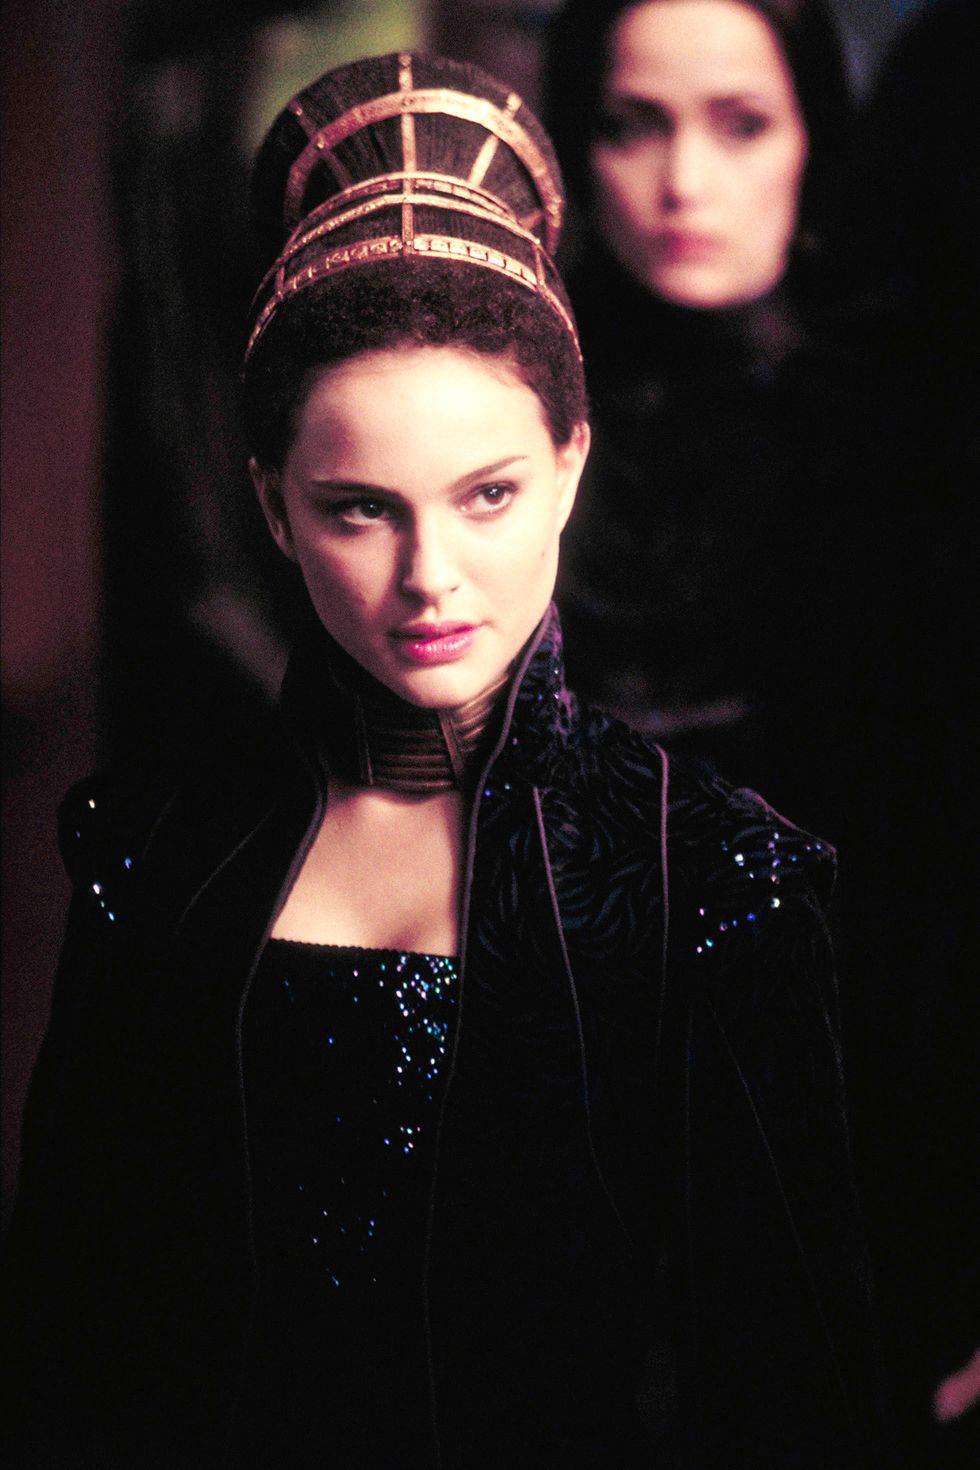 <p>La giovane regina di <em>Star Wars</em>, interpretata da Natalie Portman, ben conosce il potere di un elaborato guardaroba e delle acconciature appariscenti.</p>